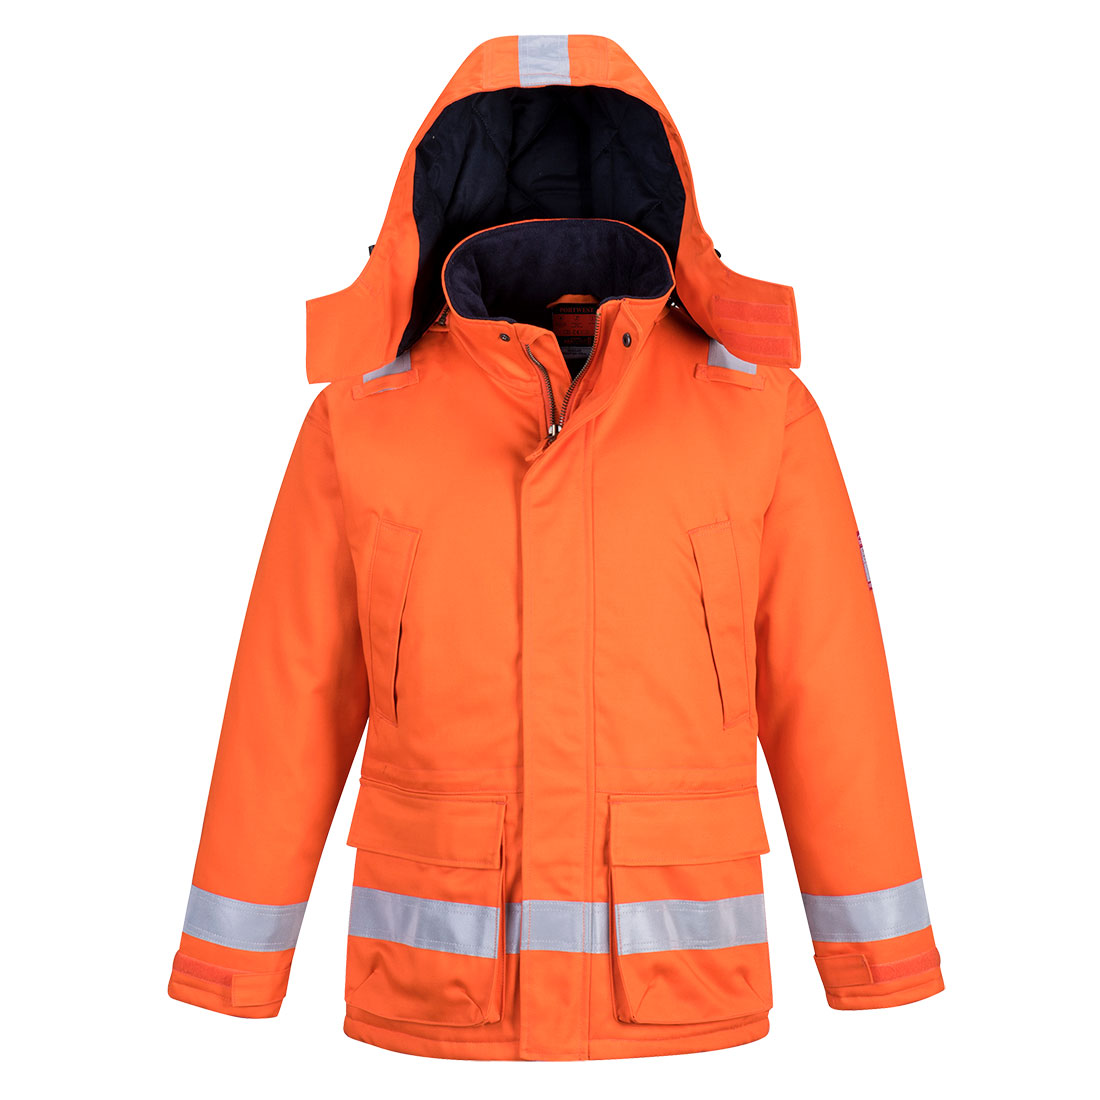 Araflame Insulated Winter Jacket  Size XXXL Orange